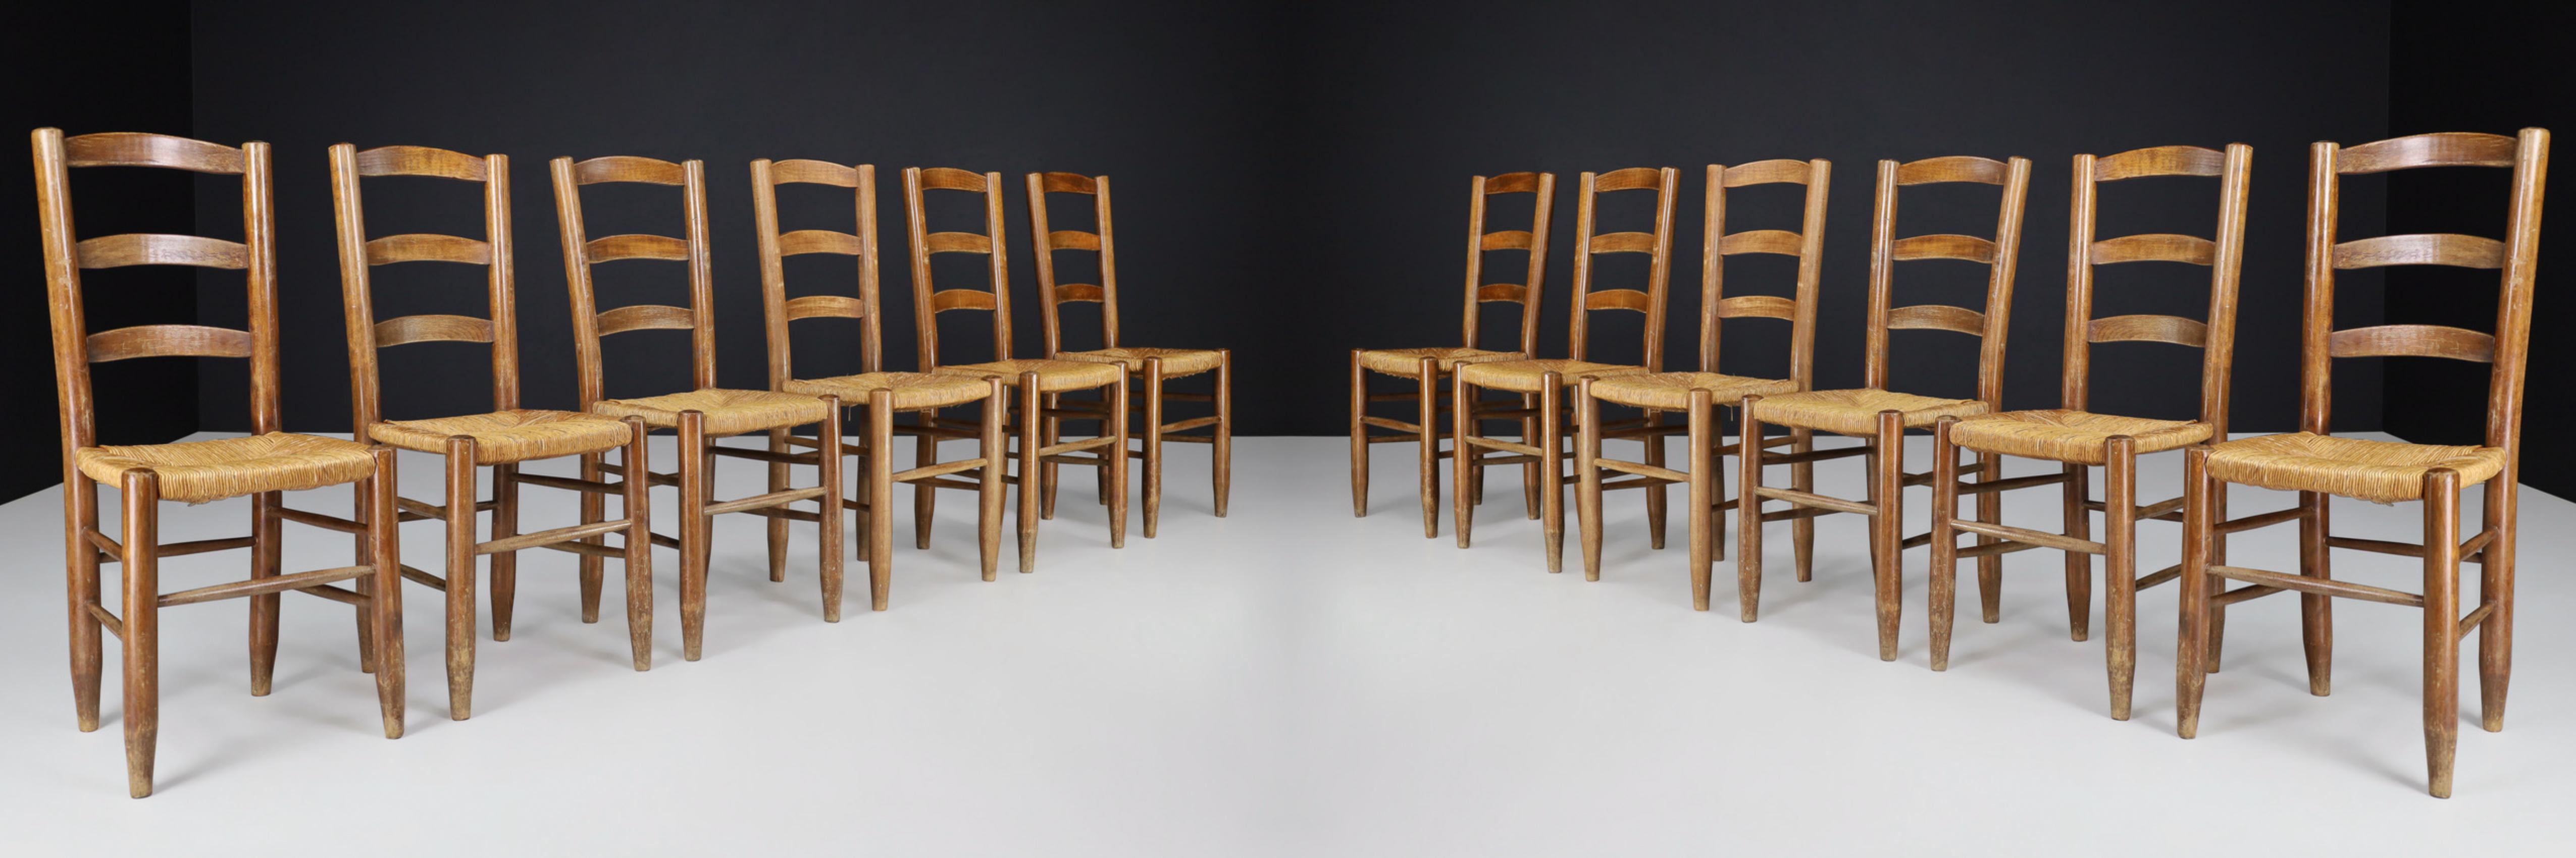 Esstischstühle im Stil von Charlotte Perriand, Frankreich 1950er Jahre.

Diese massiven Esszimmerstühle aus Buche und Binsen weisen eine schöne natürliche Patina auf und befinden sich in einem hervorragenden Originalzustand. Diese Stühle sind ein